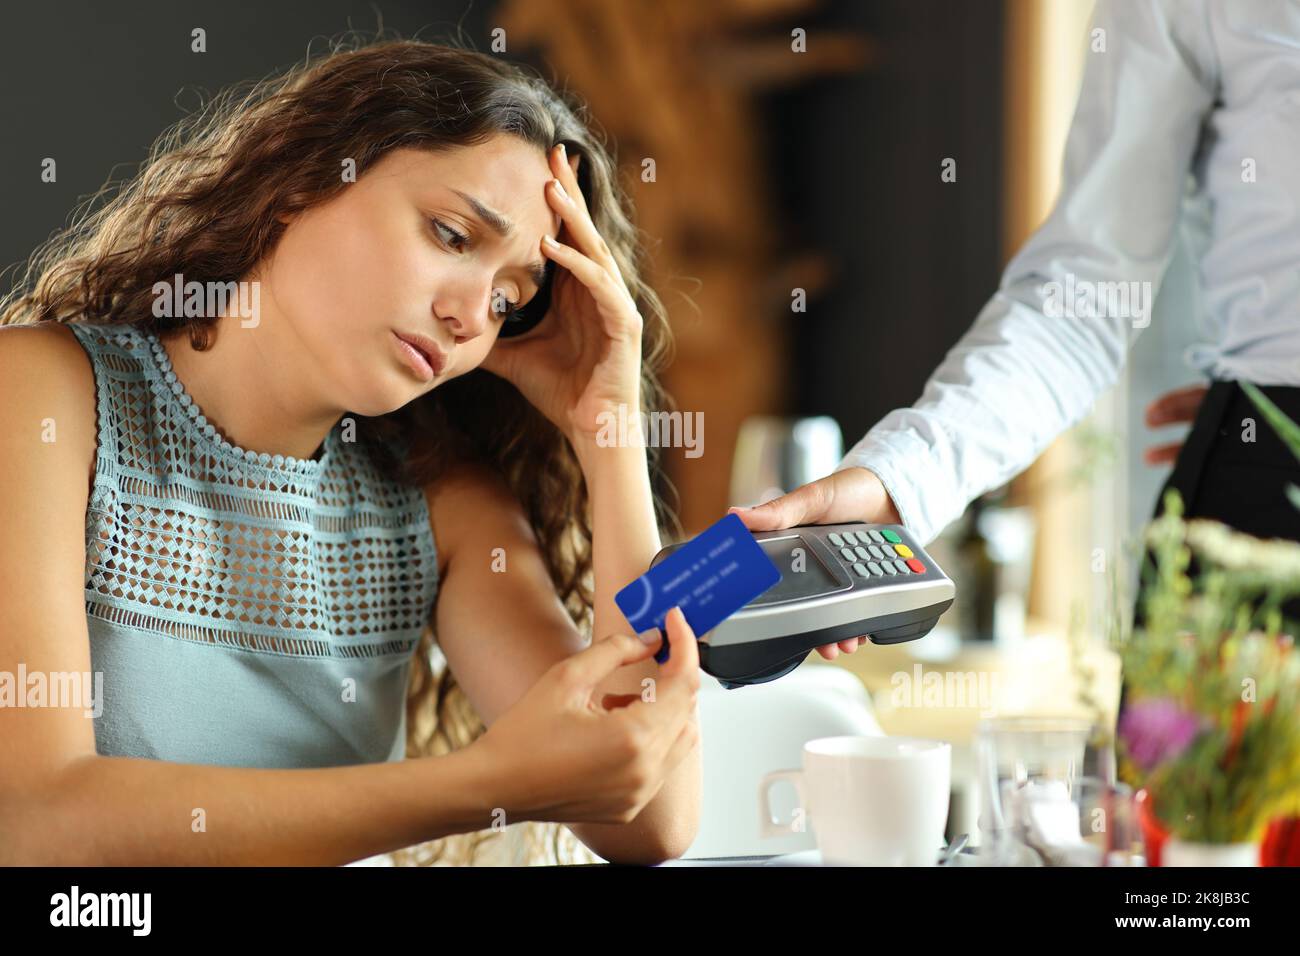 Un client inquiet paie cher avec une carte de crédit dans un restaurant Banque D'Images